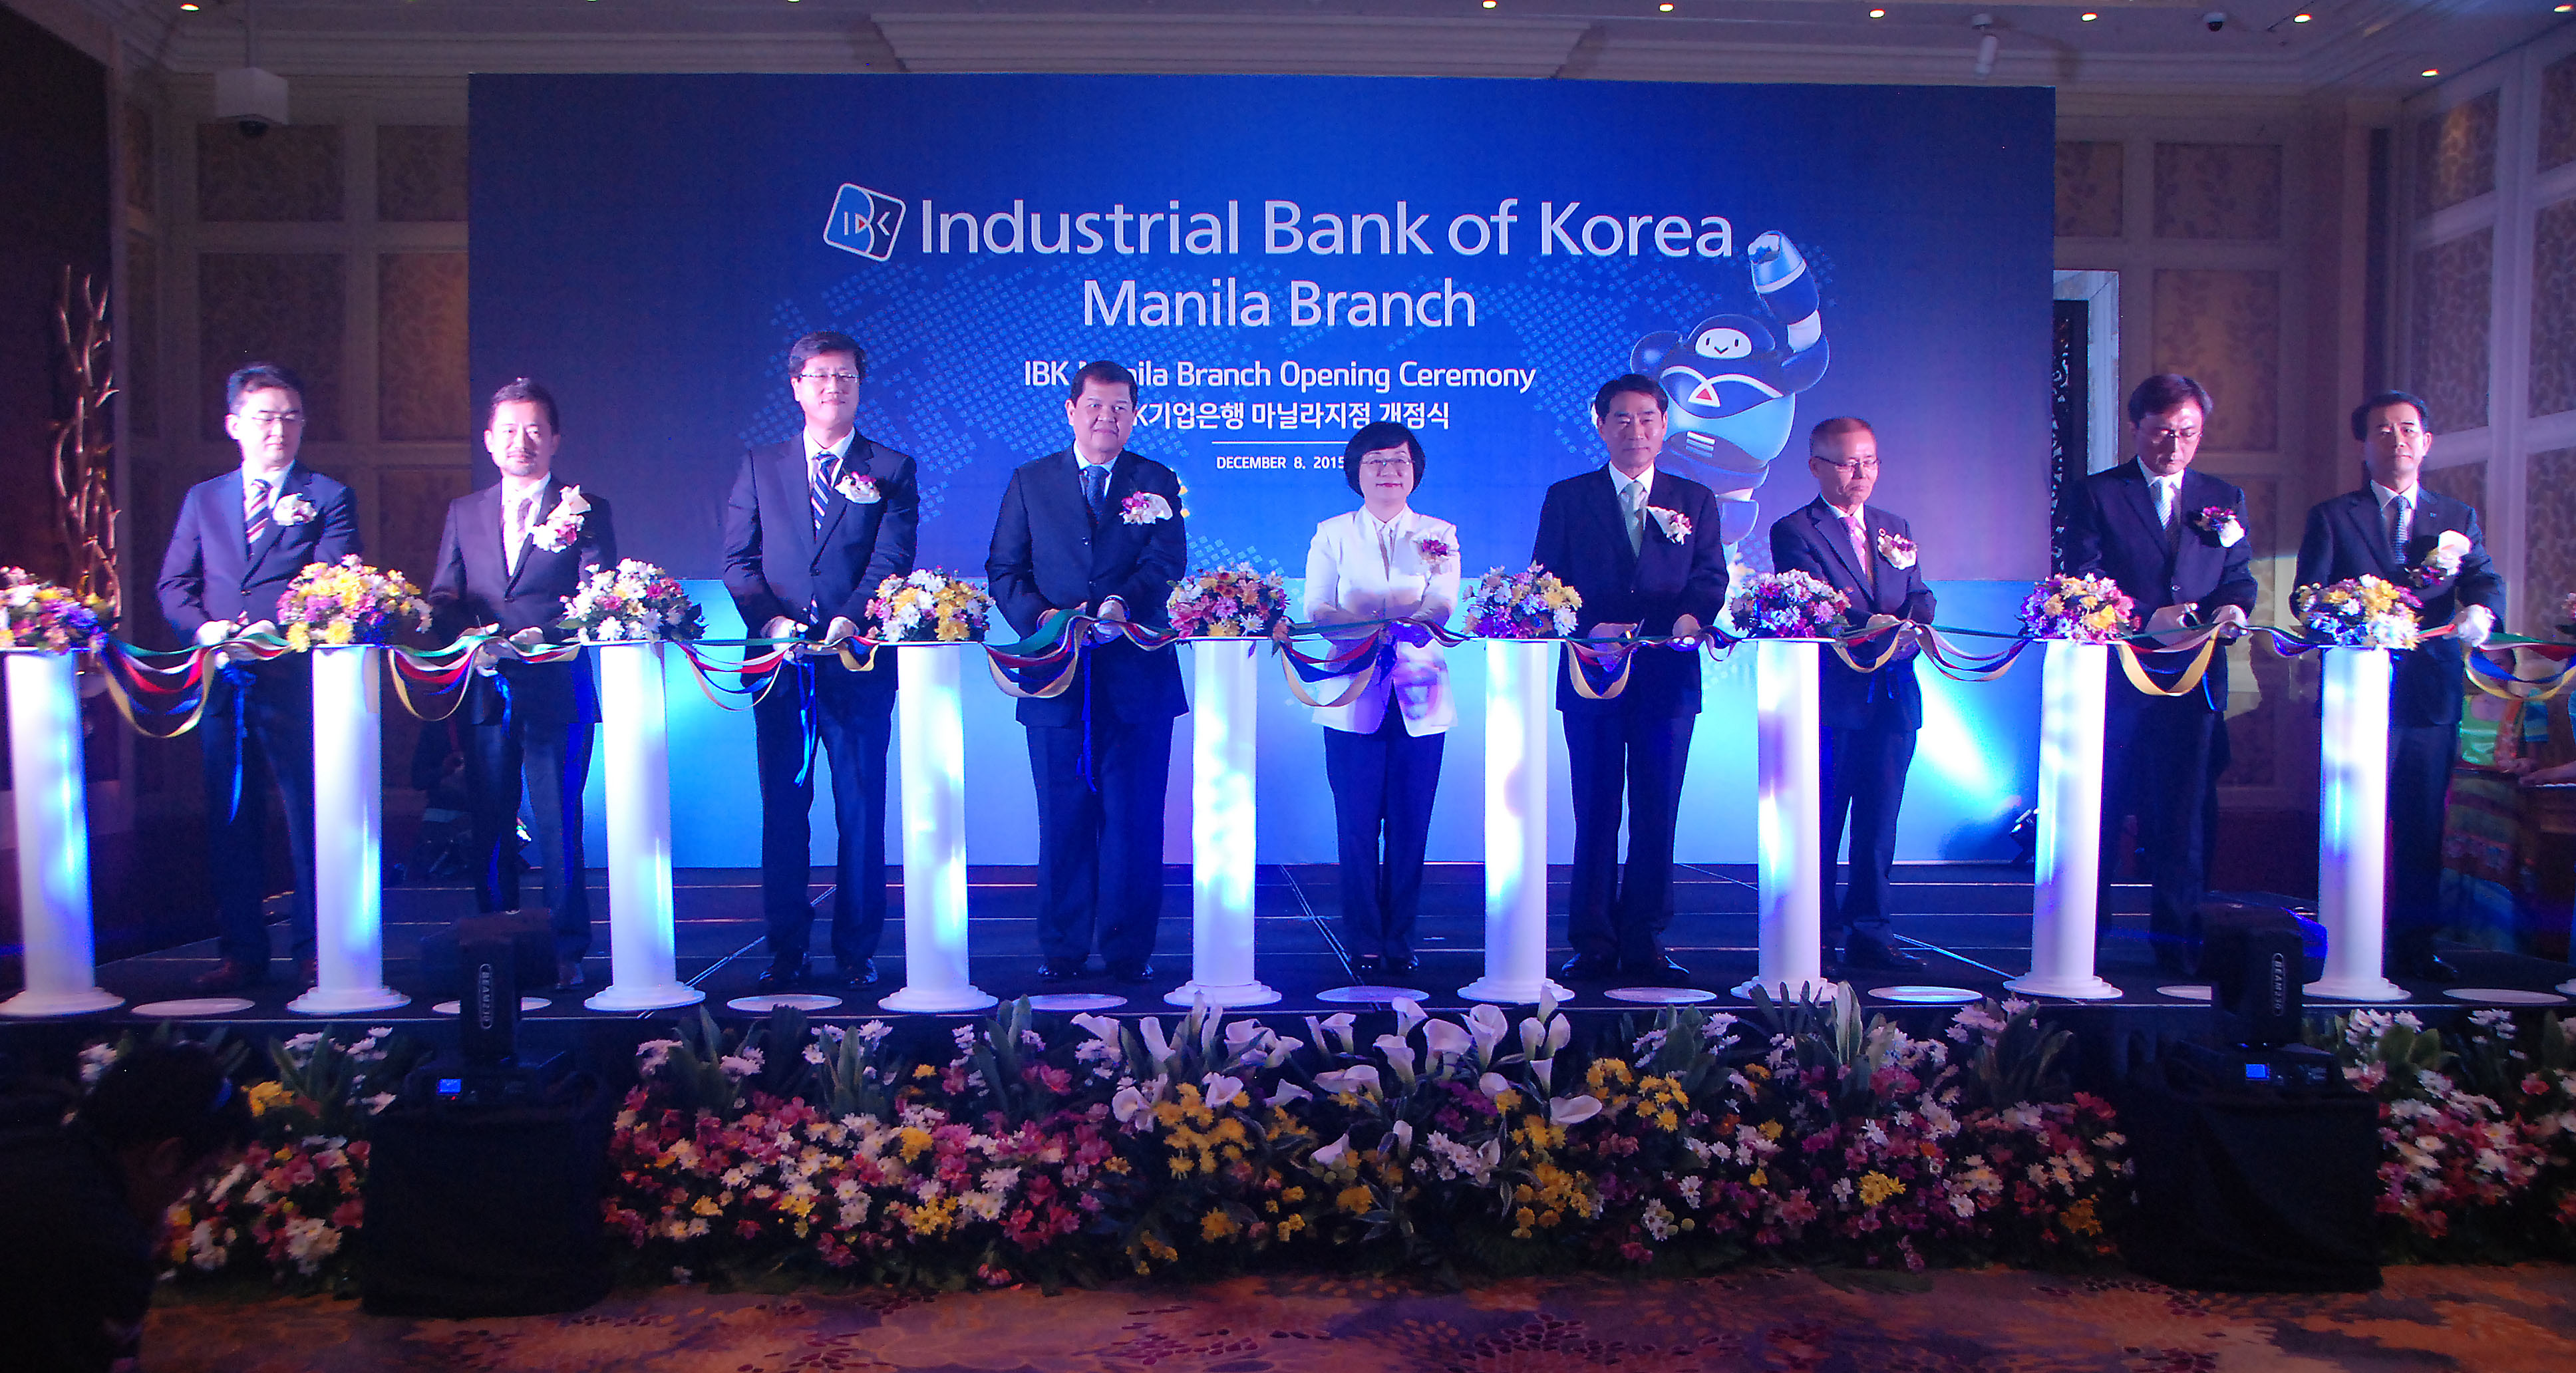 Industrial Bank of Korea